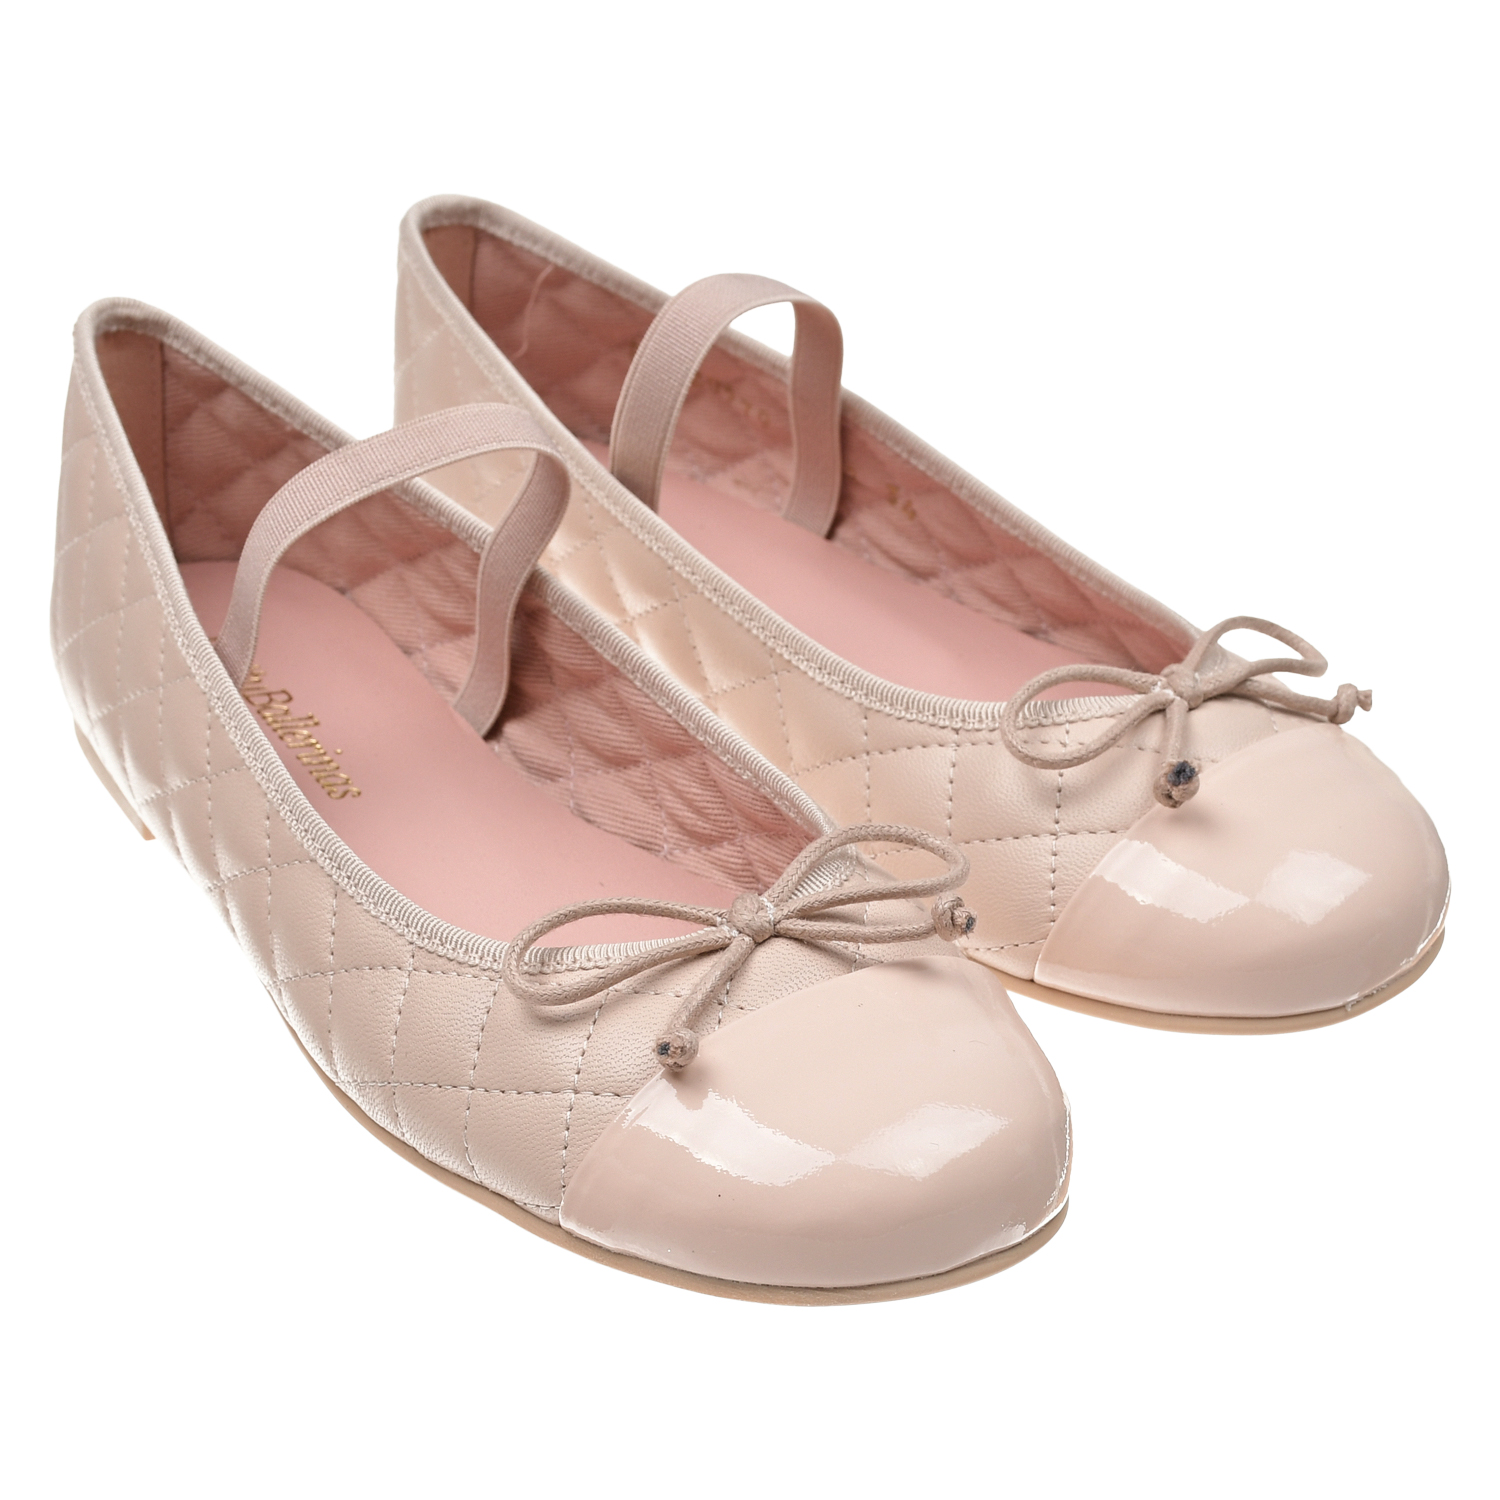 Пудровые туфли со стеганой отделкой Pretty Ballerinas туфли золотистого а pretty ballerinas детские